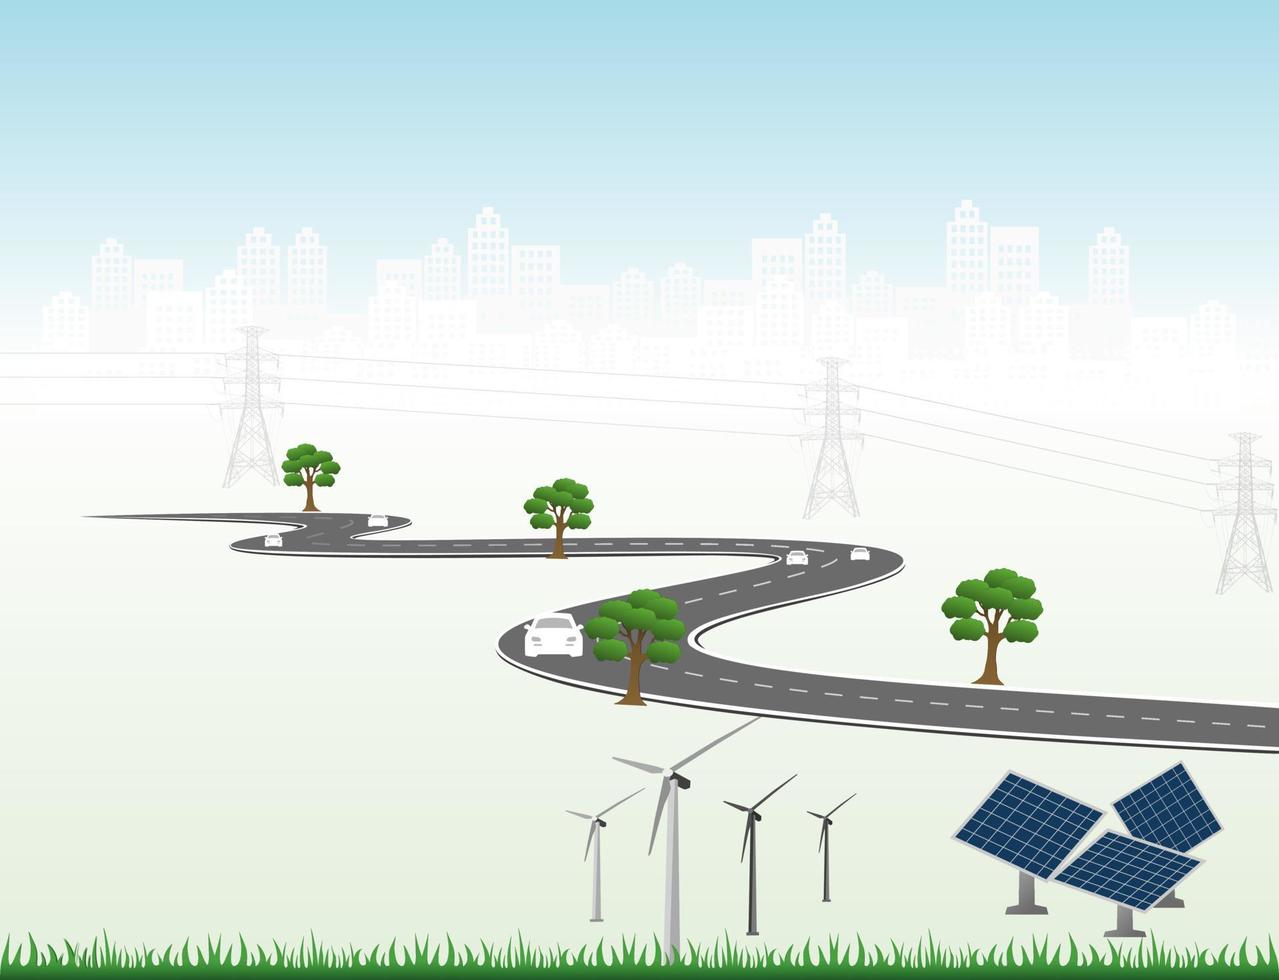 sistema di generazione di energia energia pulita rinnovabile dalla natura, come l'energia eolica, solare, idrica, può essere utilizzata per produrre elettricità. modello di vettore infografica timeline delle operazioni aziendali con bandiere